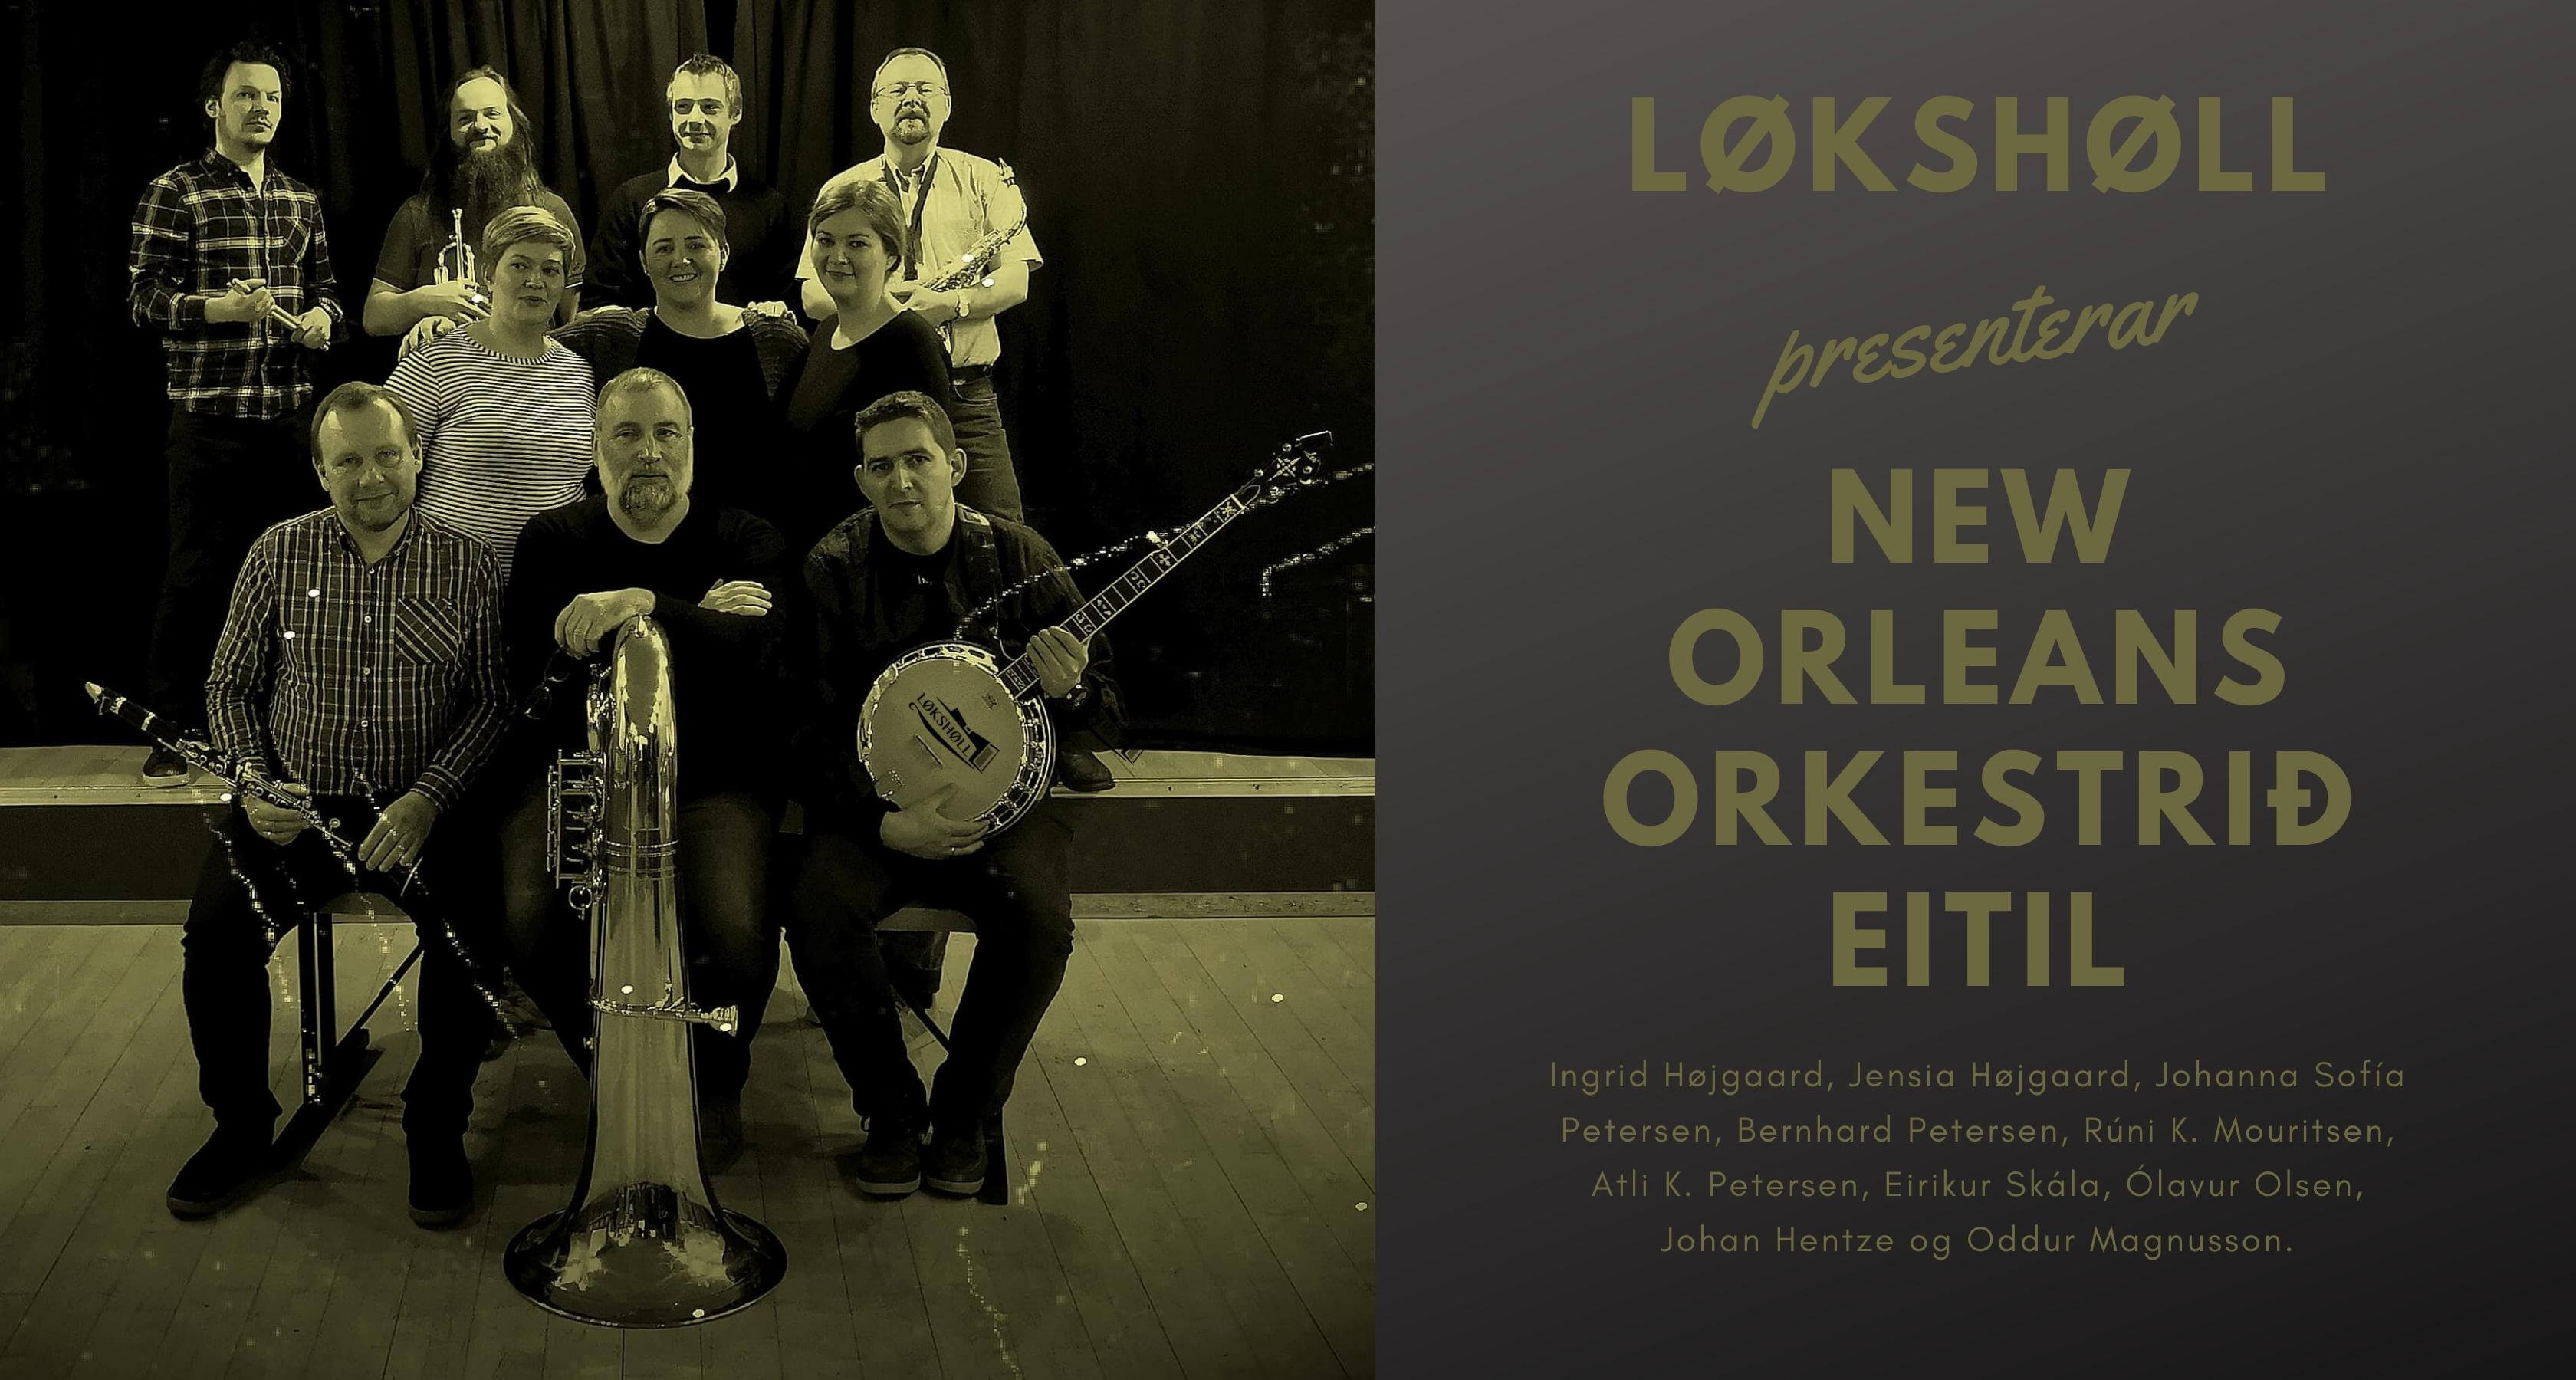 New Orleans orkestrið EITIL